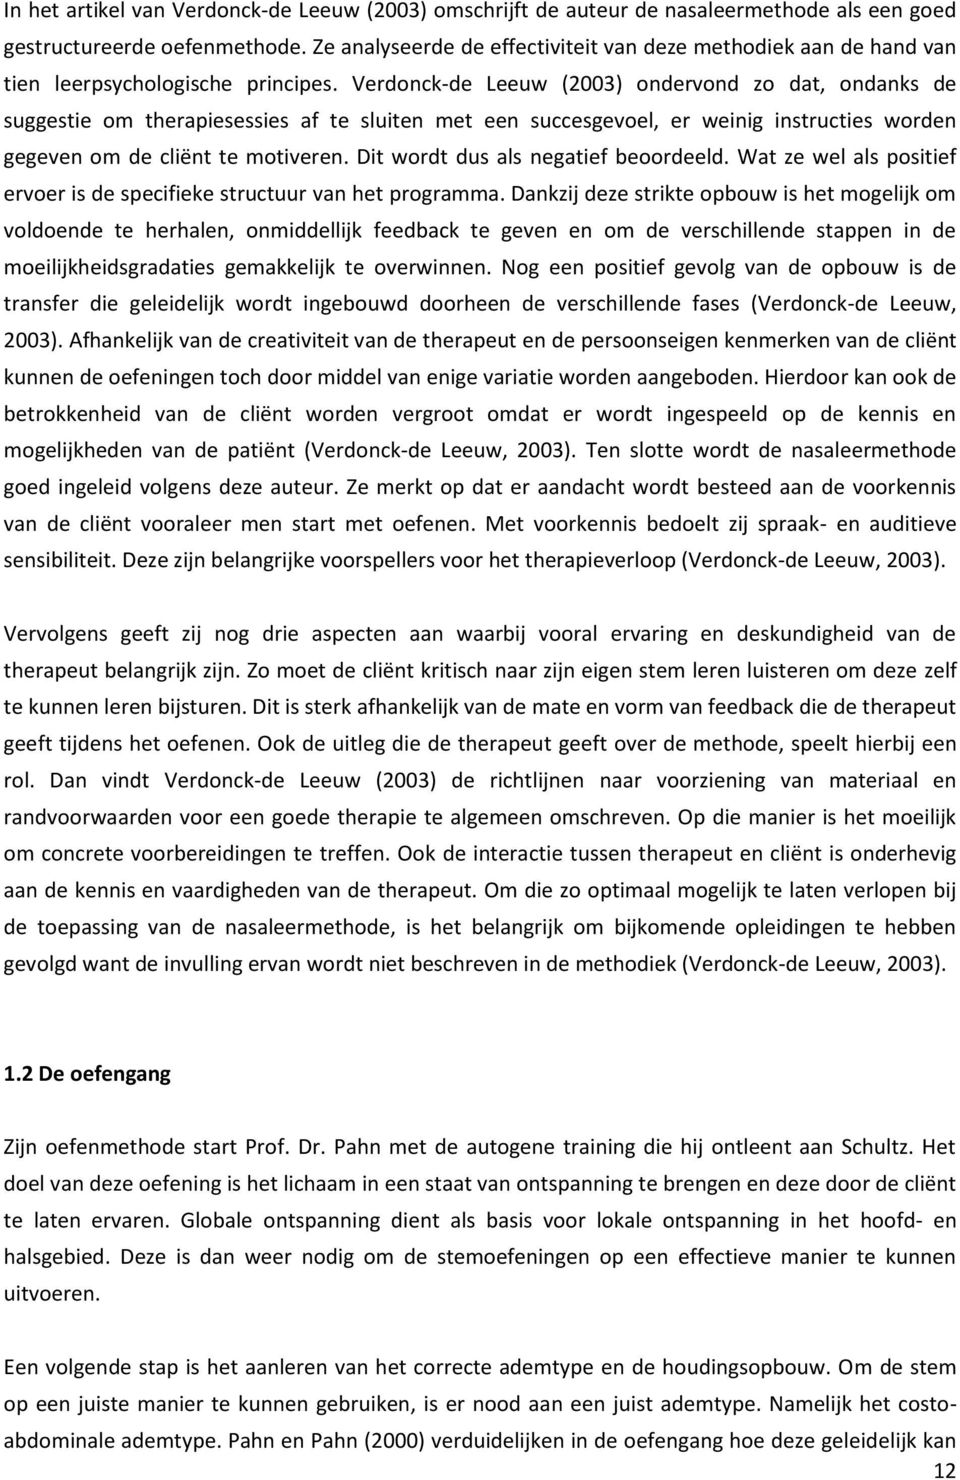 Verdonck-de Leeuw (2003) ondervond zo dat, ondanks de suggestie om therapiesessies af te sluiten met een succesgevoel, er weinig instructies worden gegeven om de cliënt te motiveren.